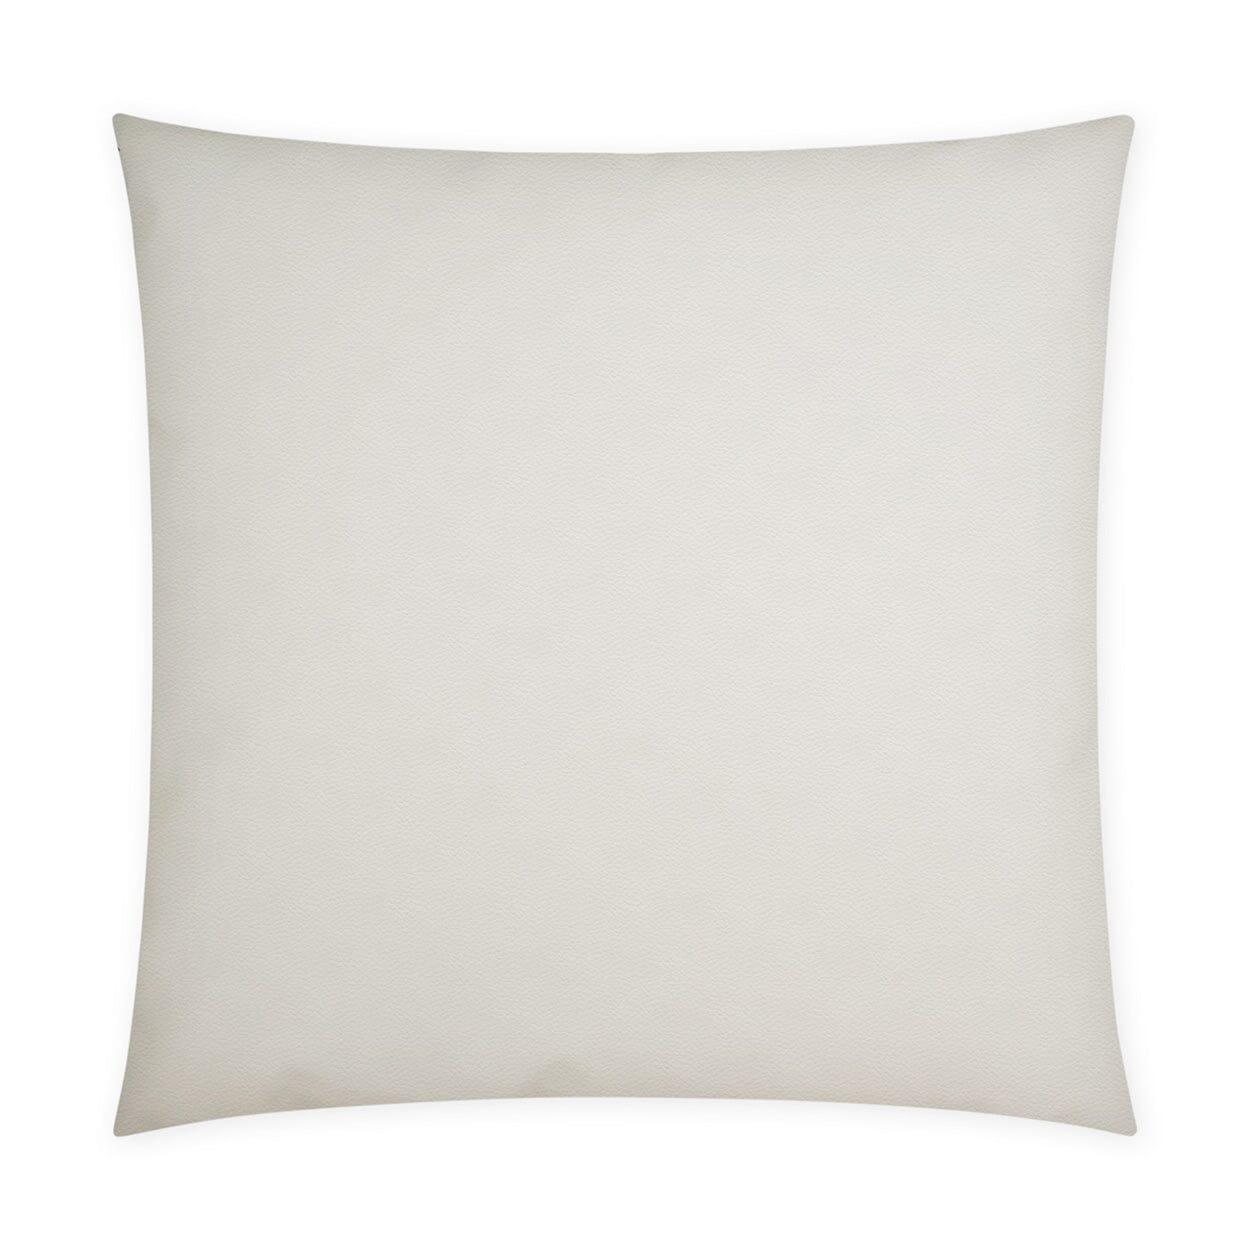 D.V. Kap 12" x 24" Outdoor Lumbar Pillow | Sundance Duo Navy Lumbar Pillows D.V Kap Outdoor